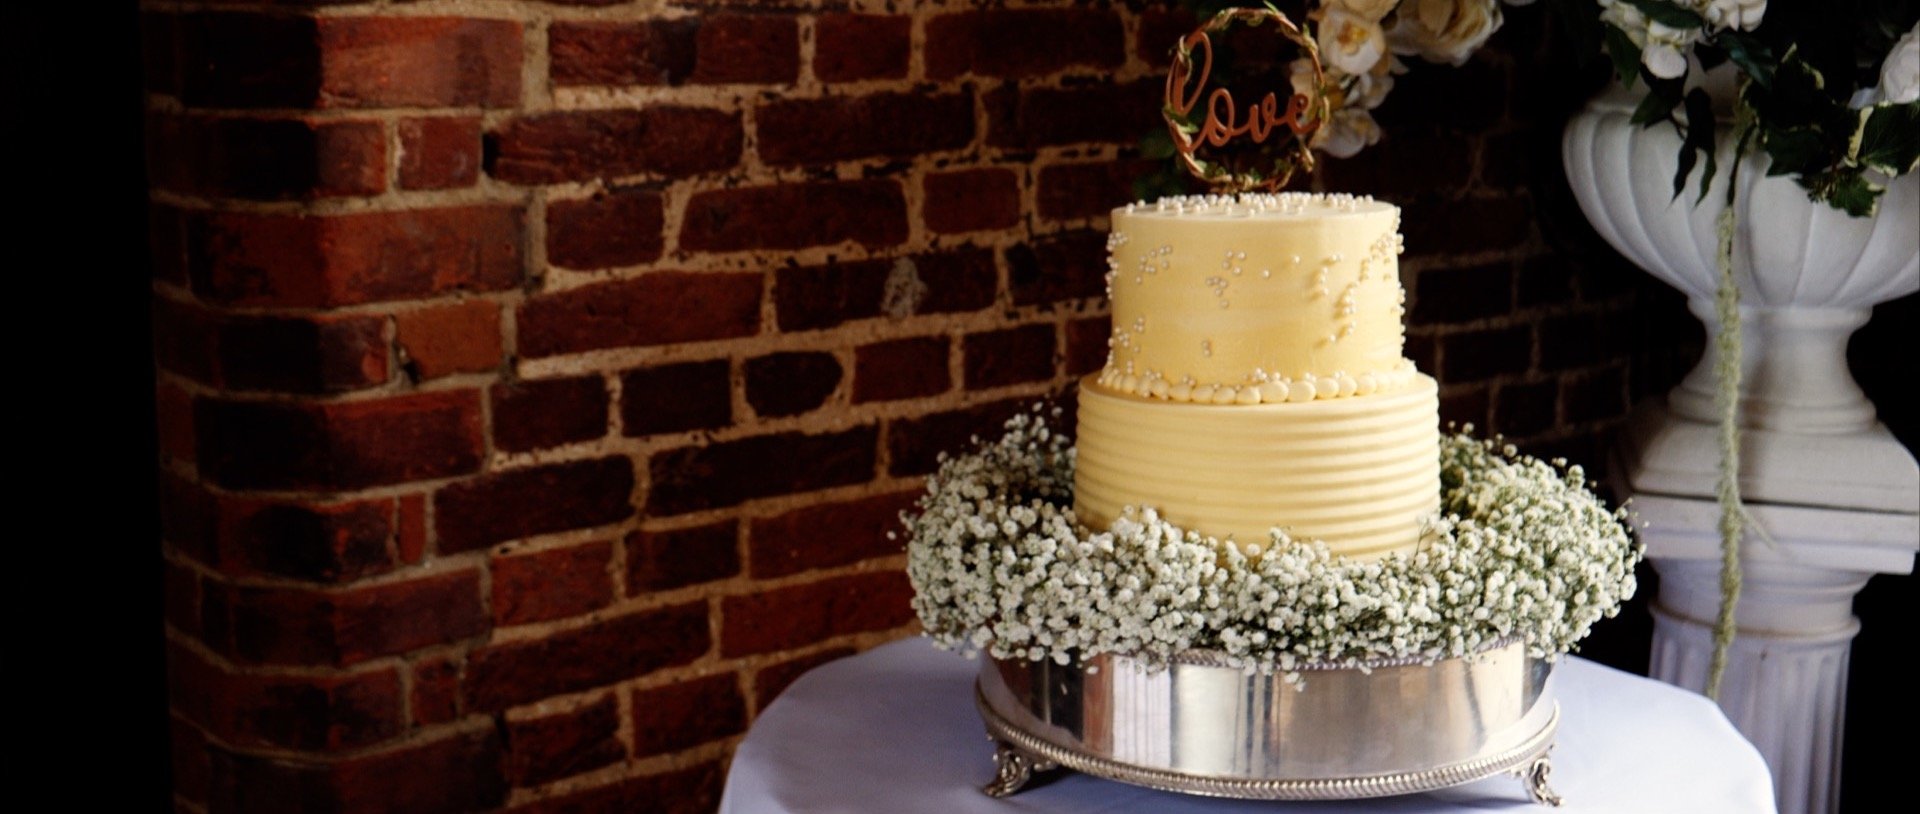 Wedding Cake at Leez Priory Essex .jpg